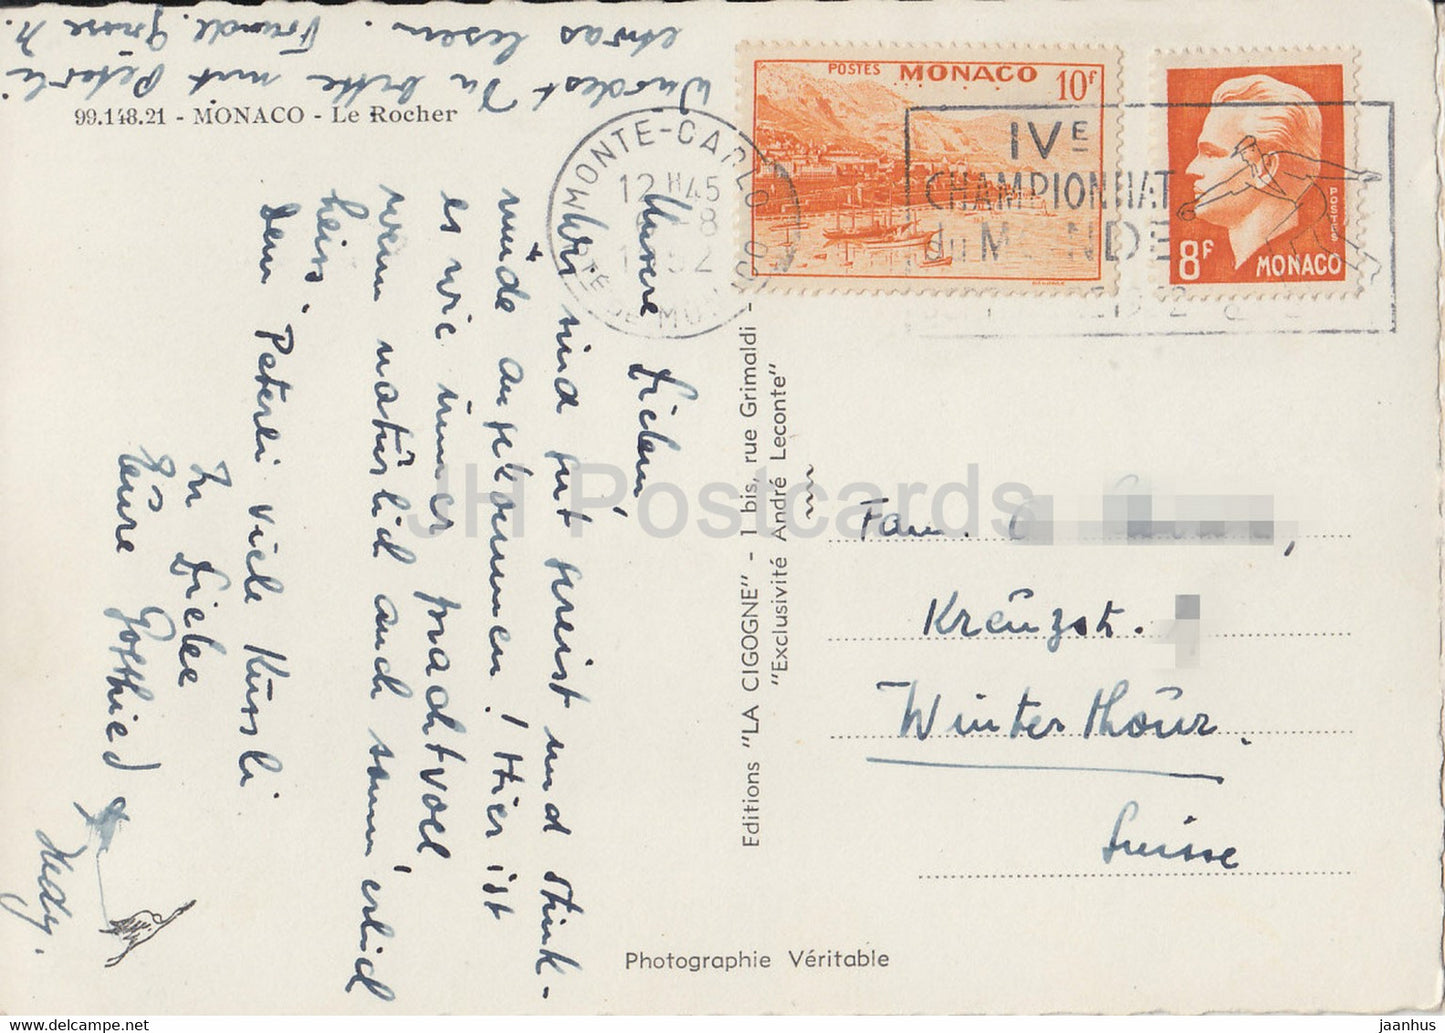 Monaco - Le Rocher - alte Postkarte - 1952 - Monaco - gebraucht